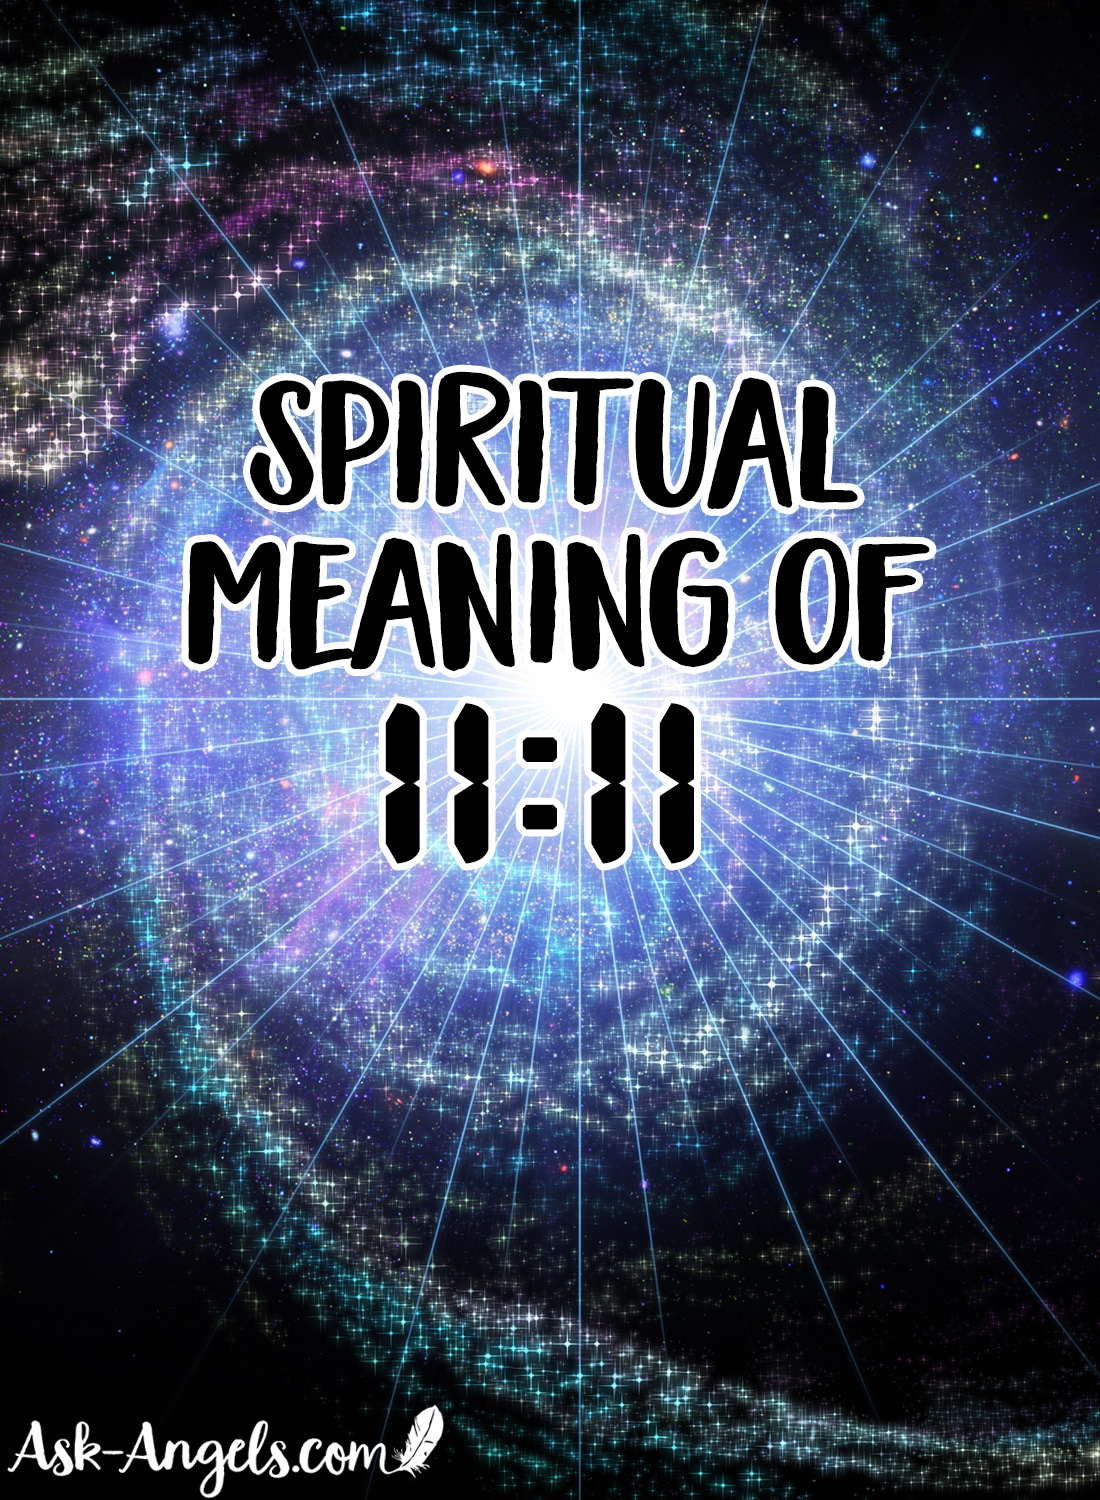 Spiritual Meaning of Seeing 1111